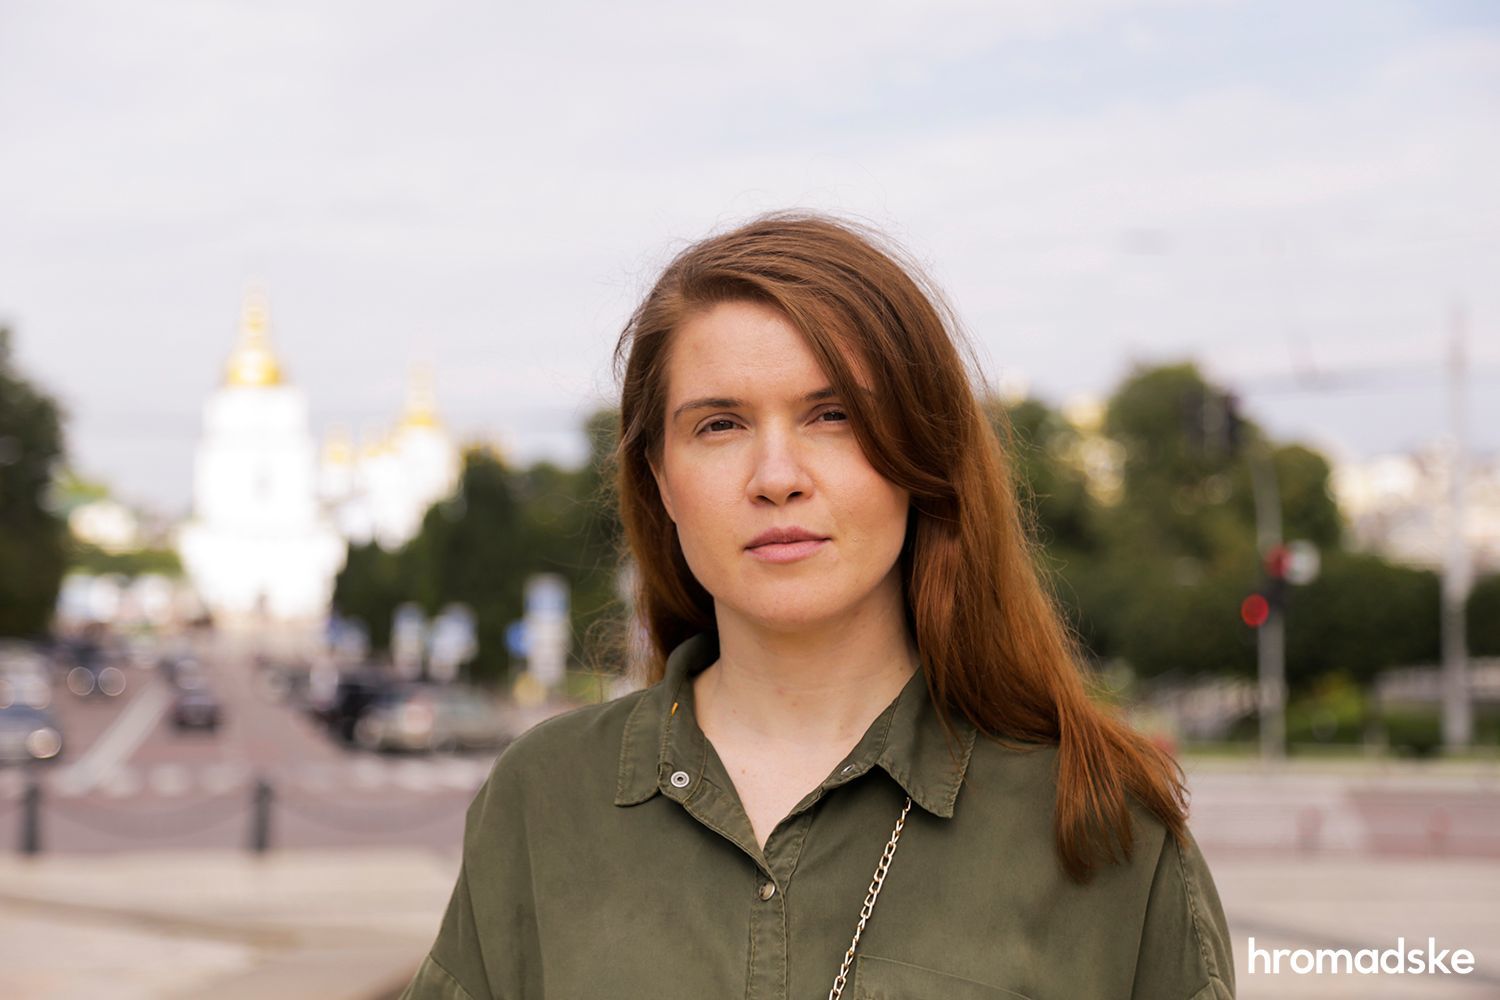 Мобилизация женщин в Украине: Безуглая сделала резонансное заявление о "равных обязанностях"